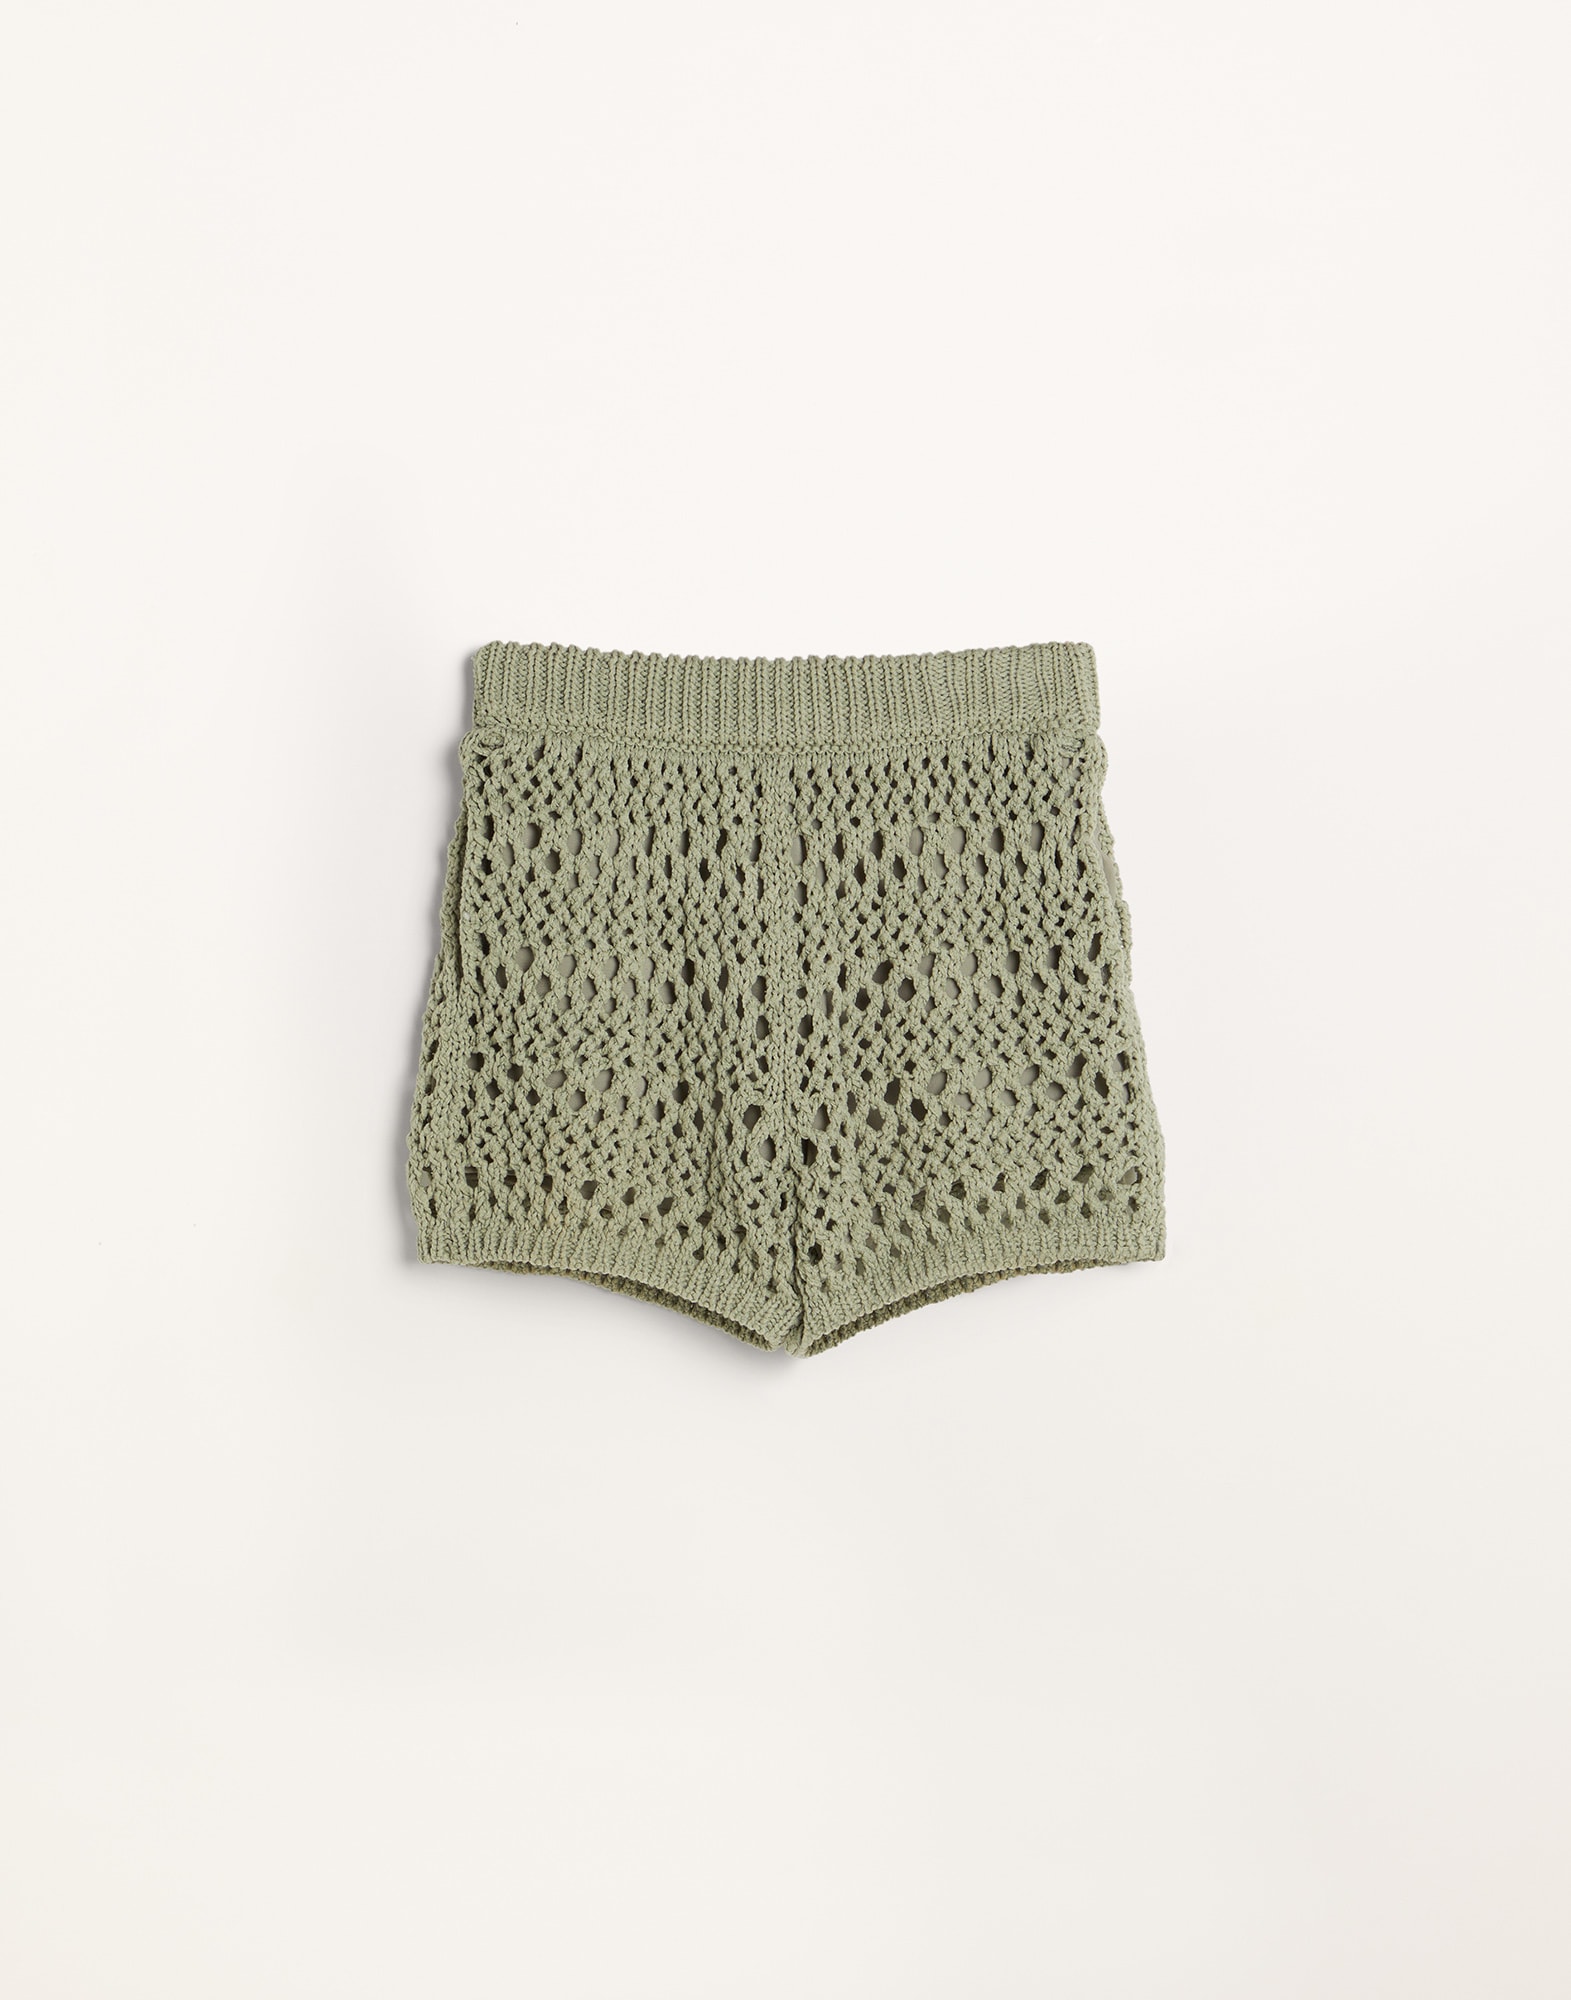 Knit shorts